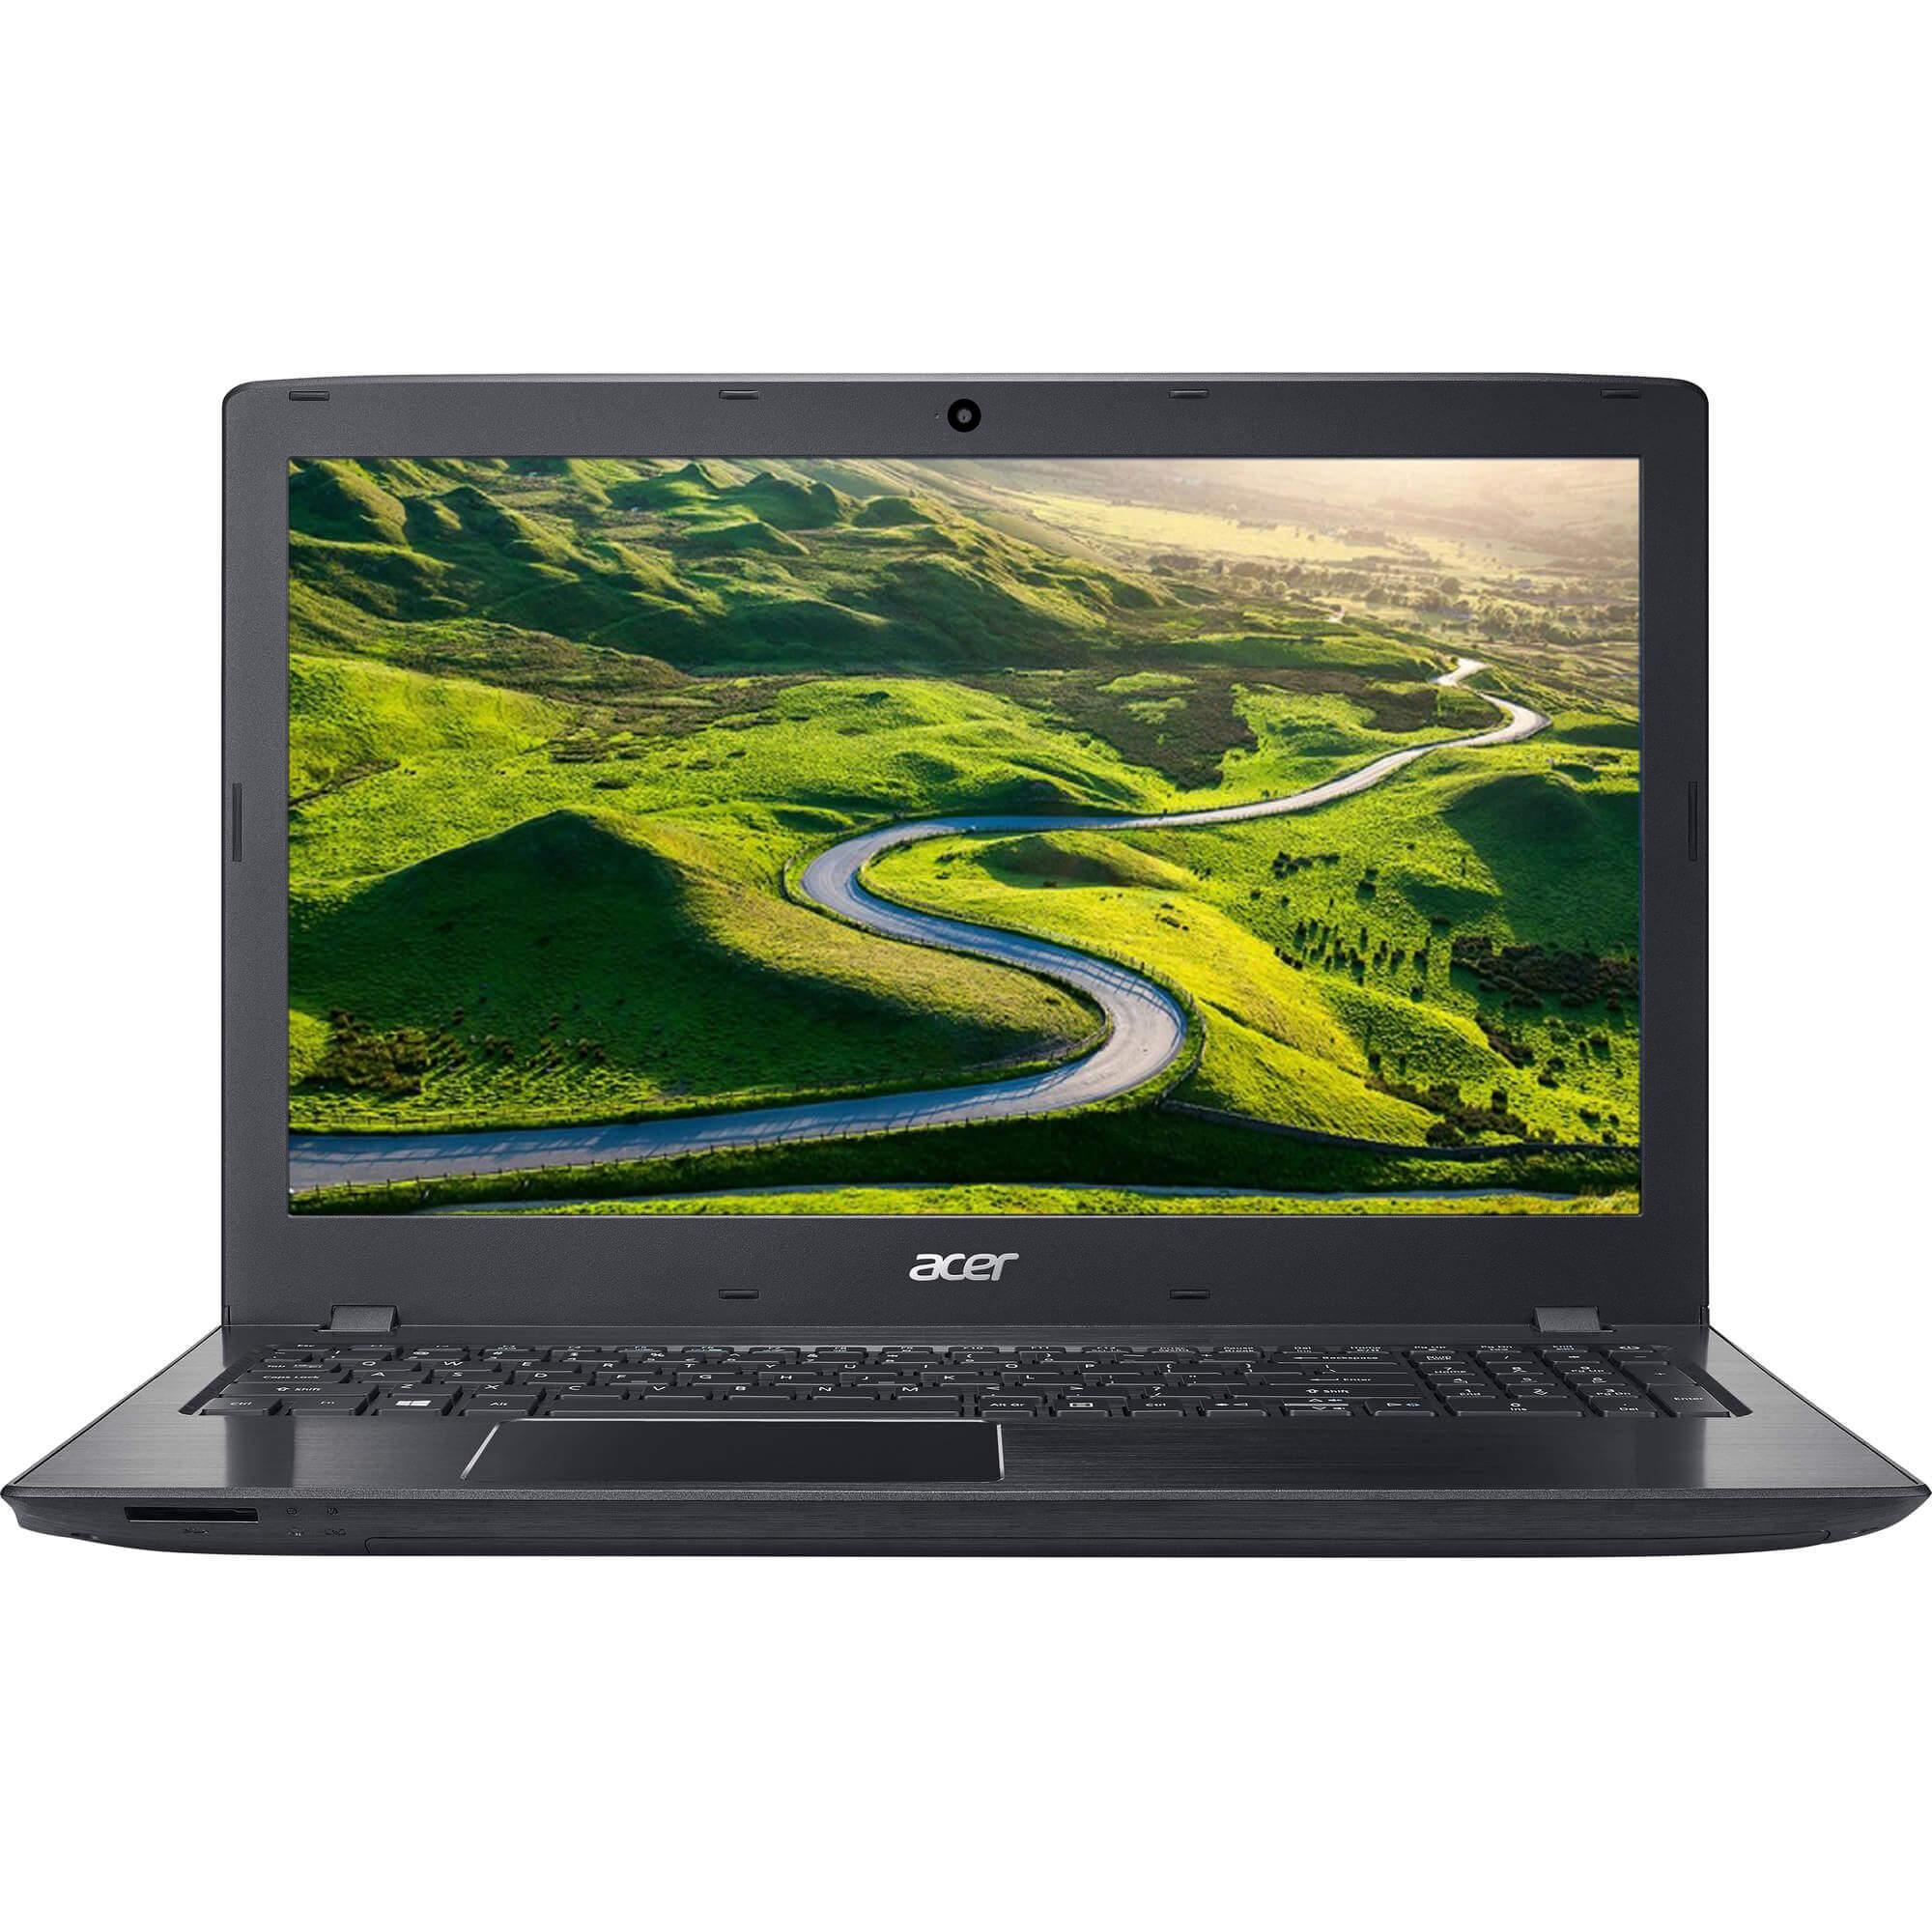  Laptop Acer E5-523G-6661, AMD A6-9210, 4GB DDR4, HDD 1TB, AMD Radeon R5 M430, Linux 